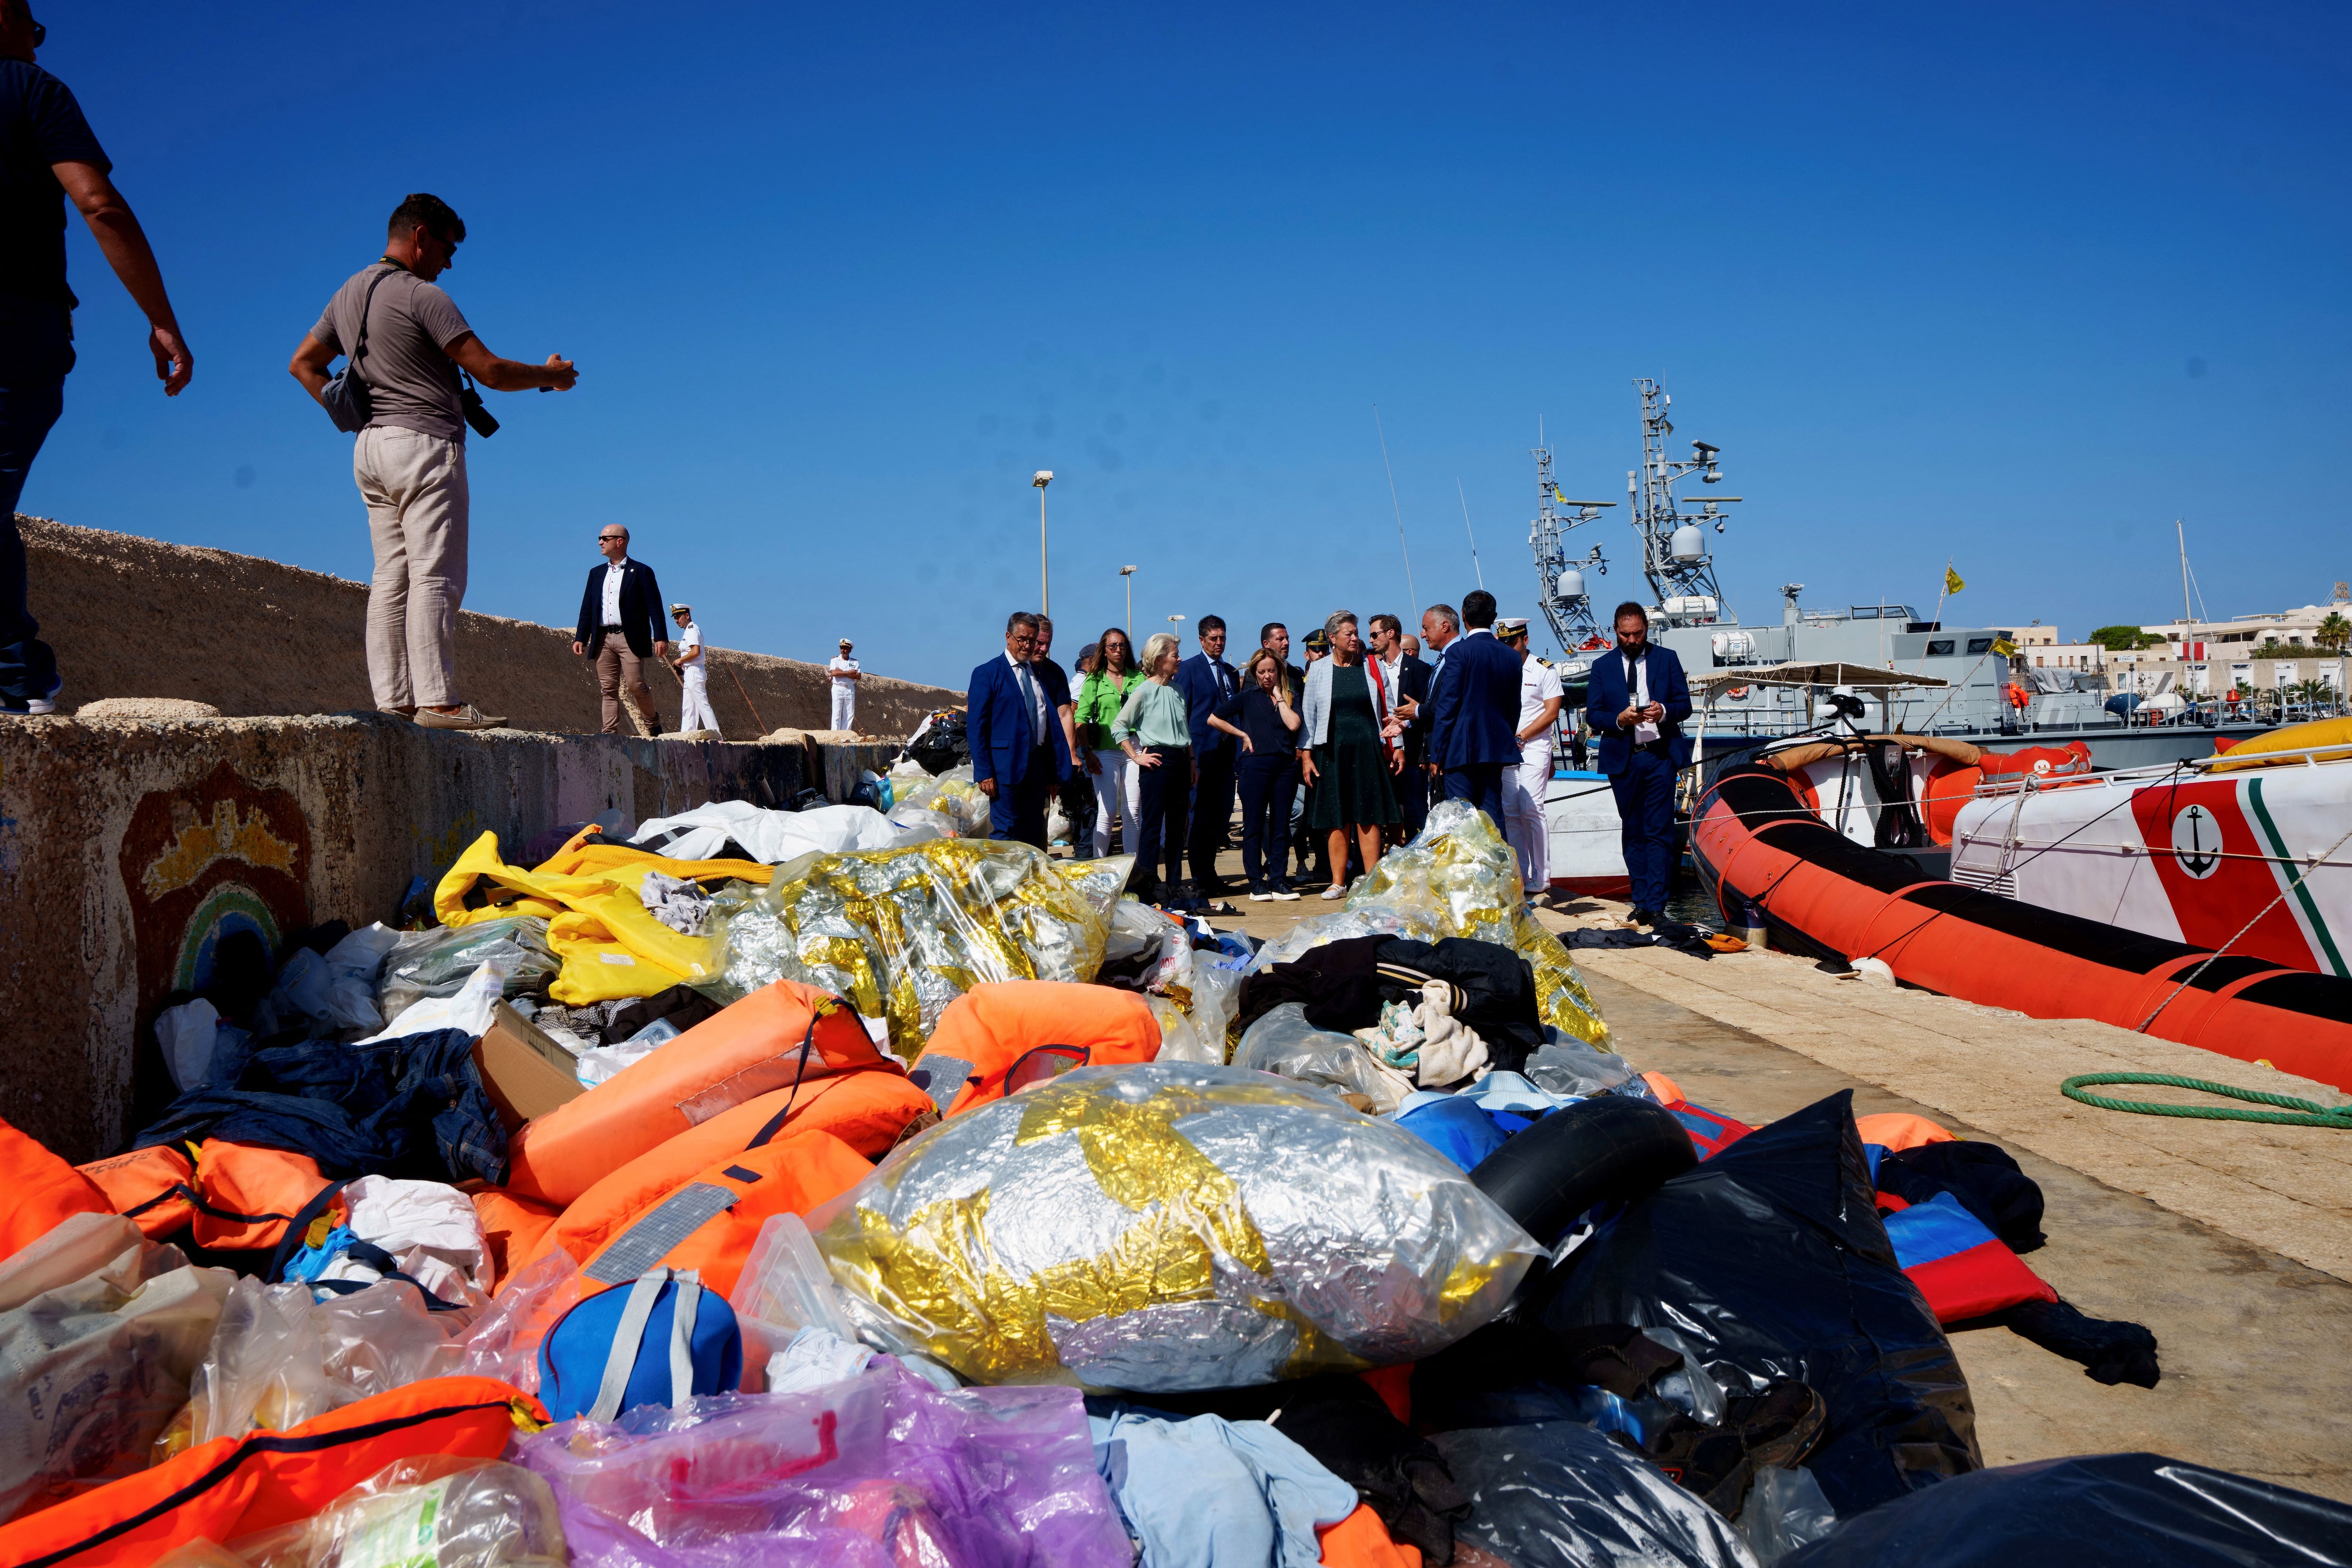 El puerto dónde llegan los migrantes se encuentra repleto de bolsas y chalecos salvavidas. Palazzo Chigi Press Office/Handout via REUTERS. 